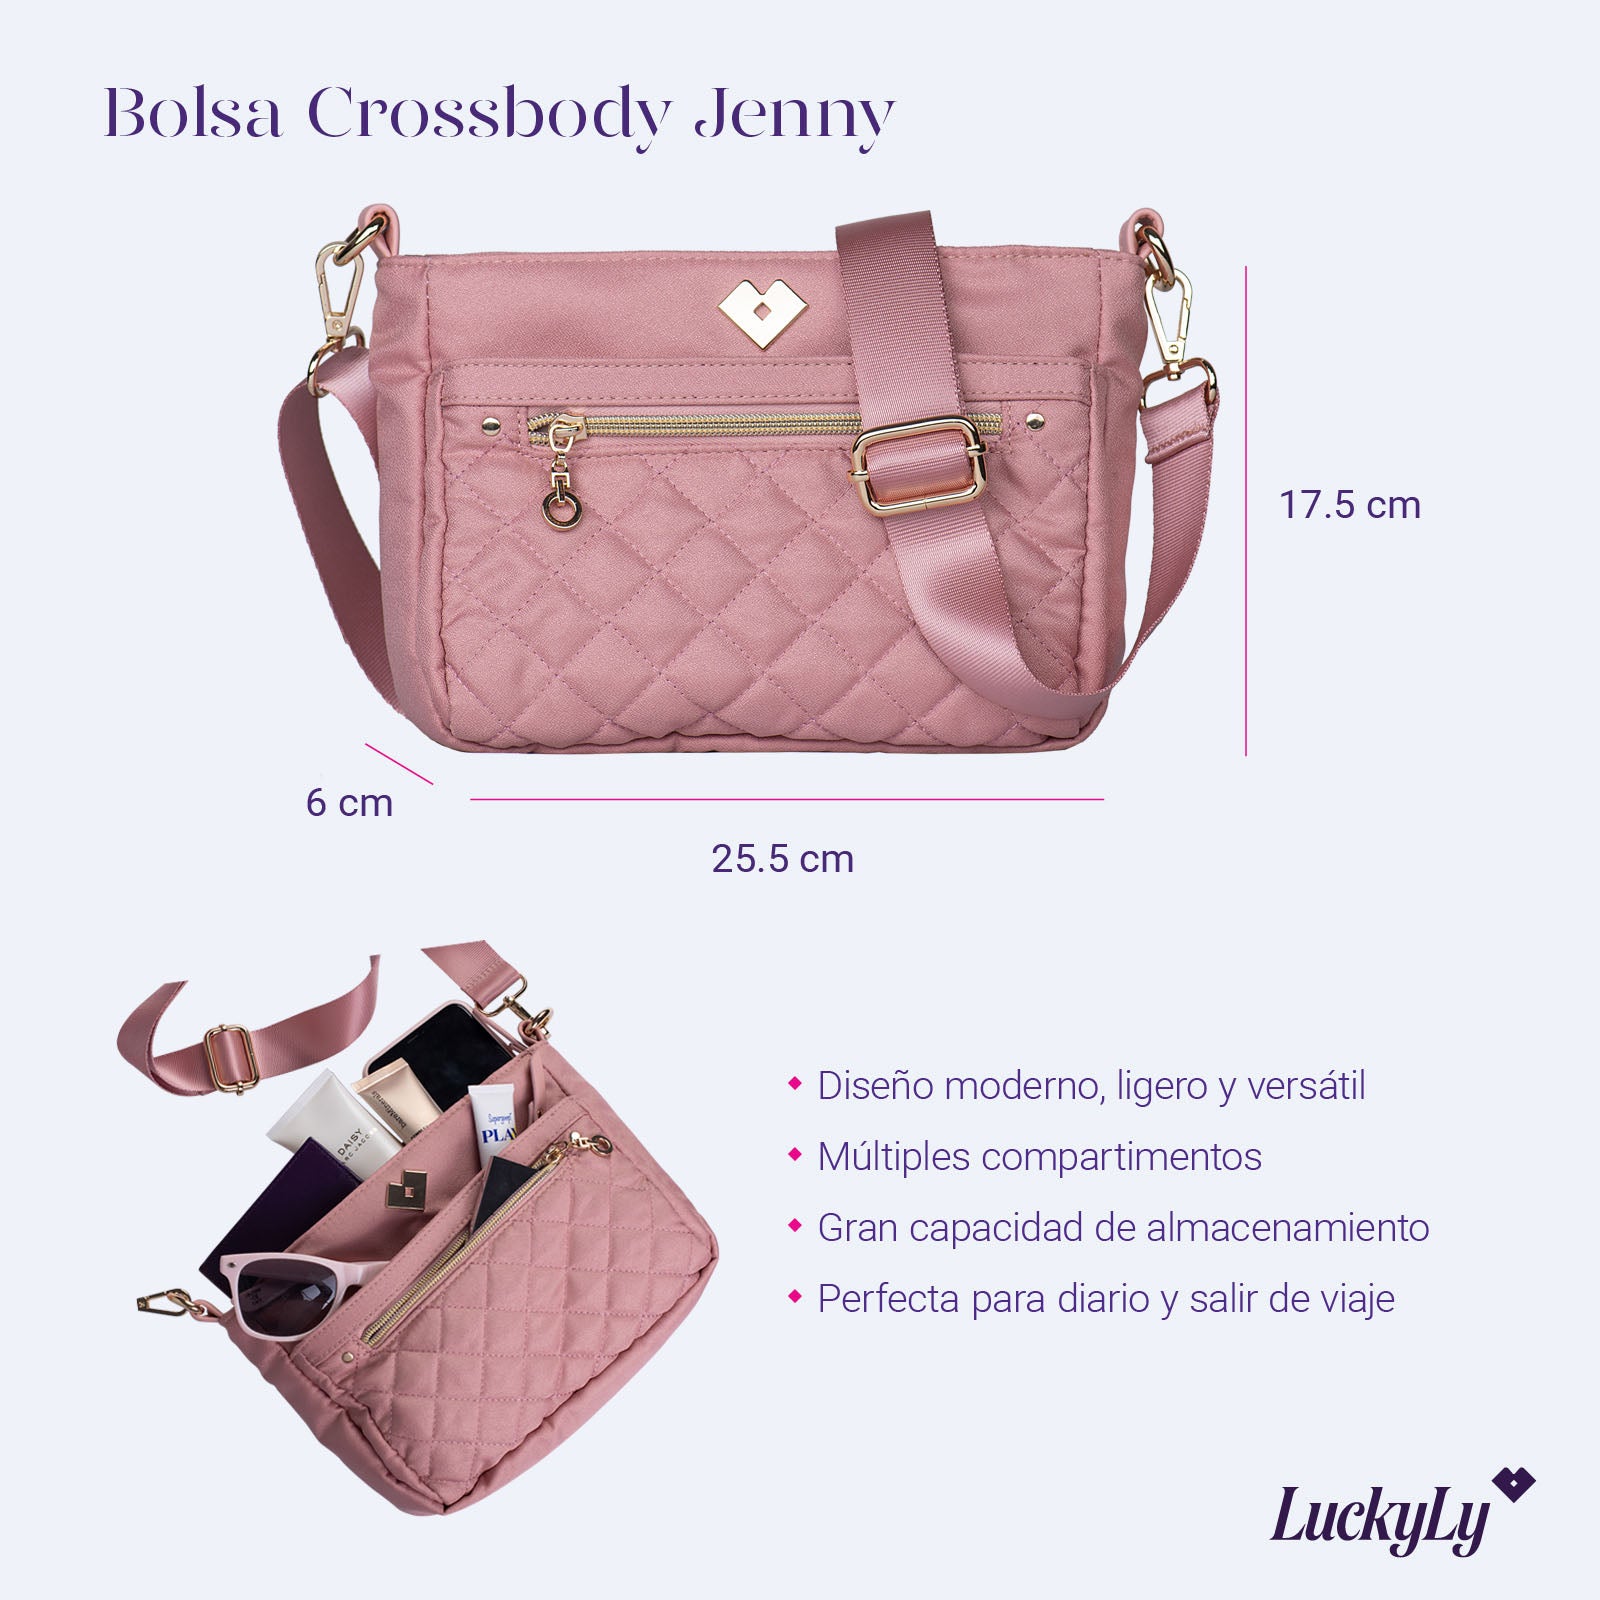 Bolsa Crossbody Jenny - Rosa